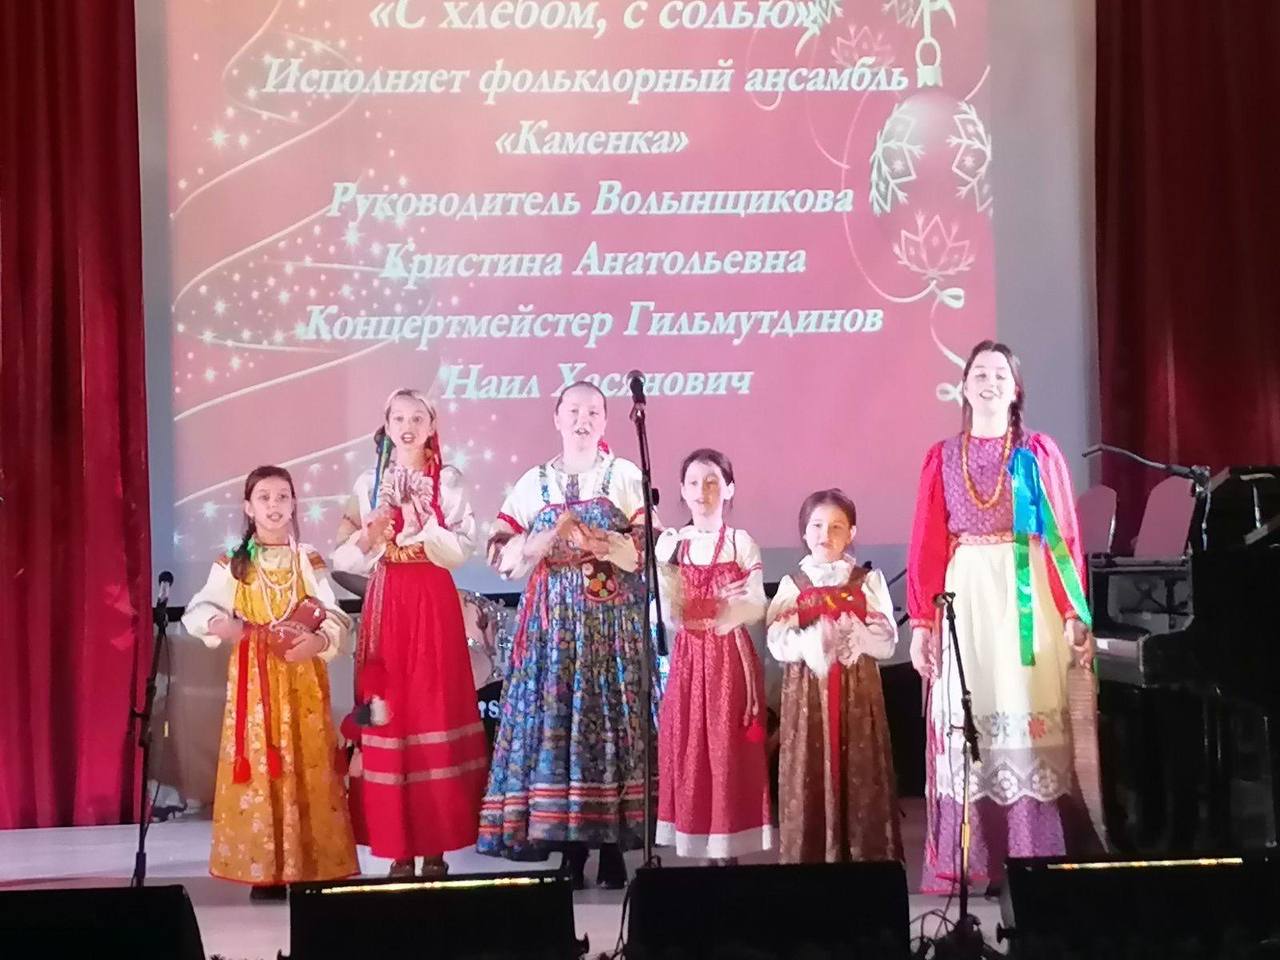 Ульяновская Детская школа искусств имени Варламова отметила 65-летие.